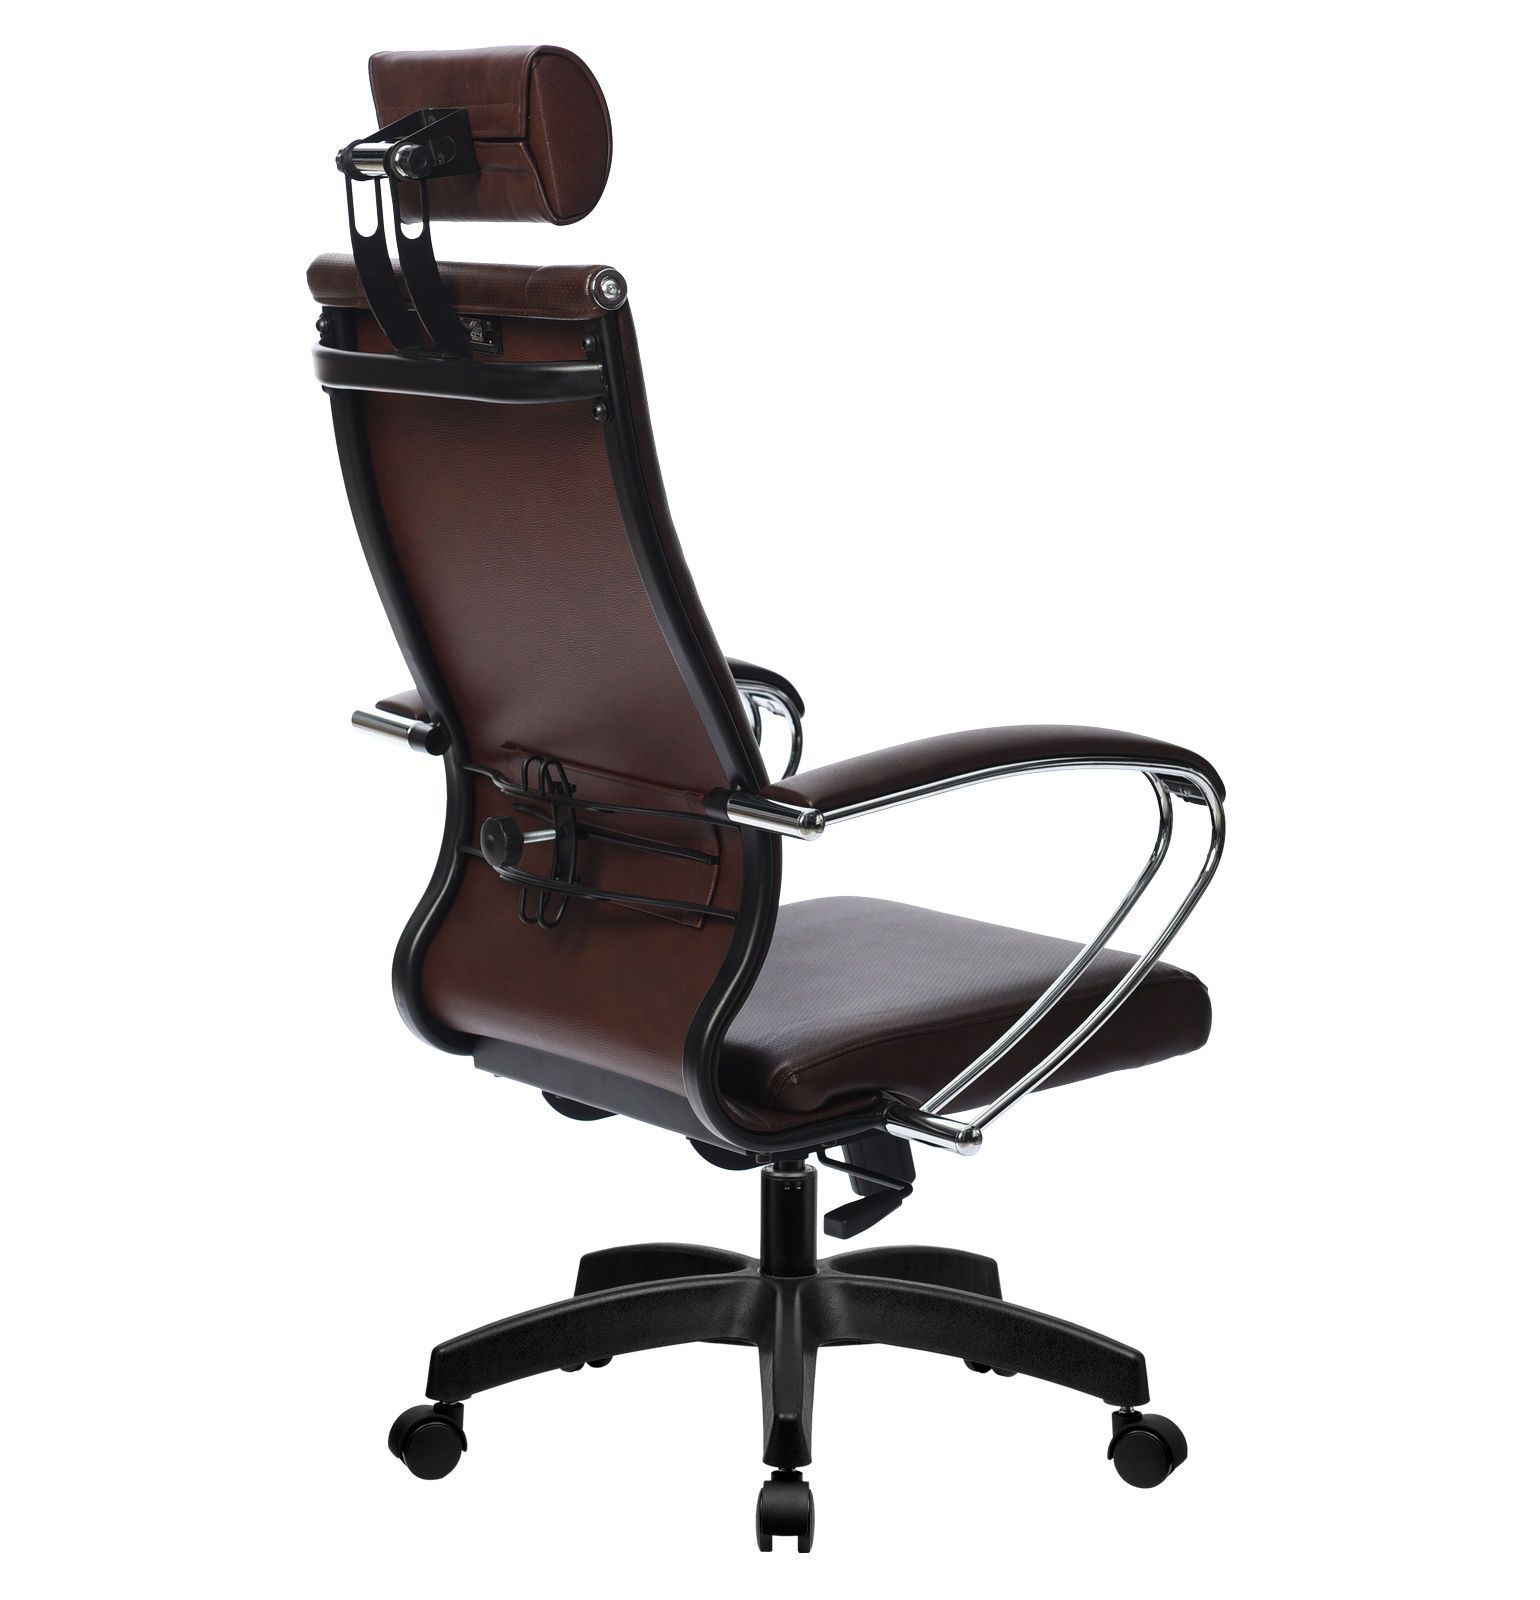 Кресло компьютерное Метта Комплект 35 Pl темно-коричневый